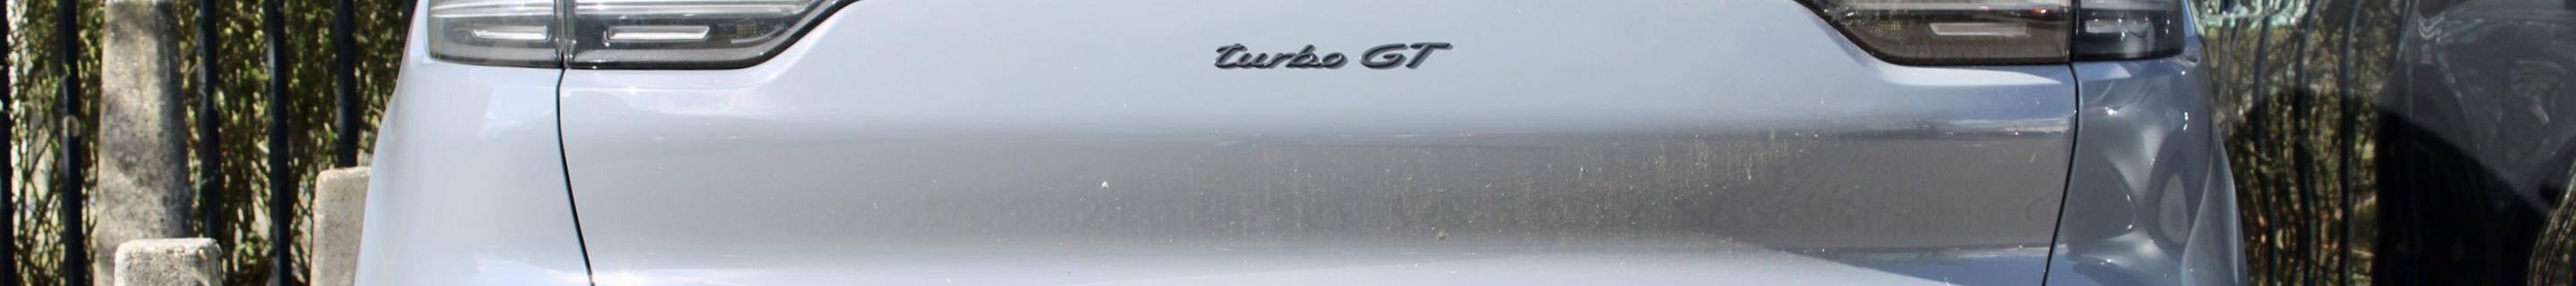 Porsche Cayenne Coupé Turbo GT